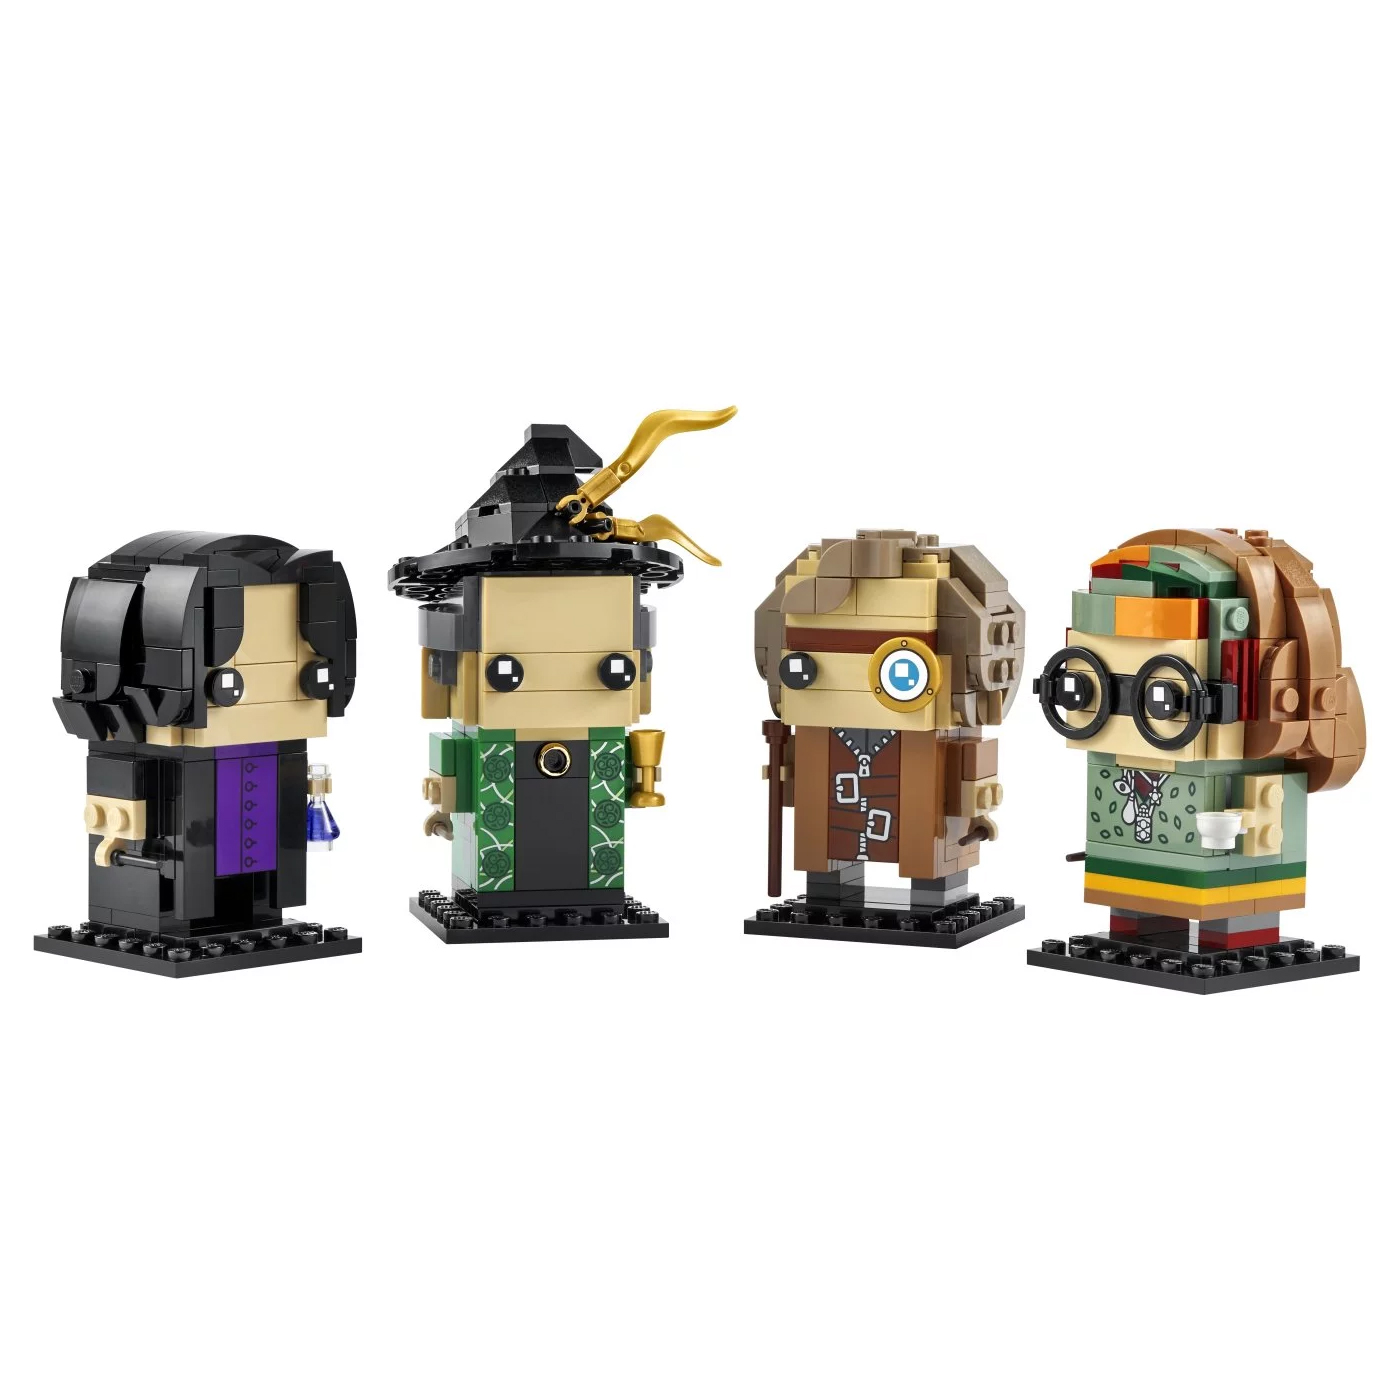 Конструктор Lego BrickHeadz Harry Potter Professors of Hogwarts 40560, 601 деталь конструктор lego brickheadz 40442 золотая рыбка